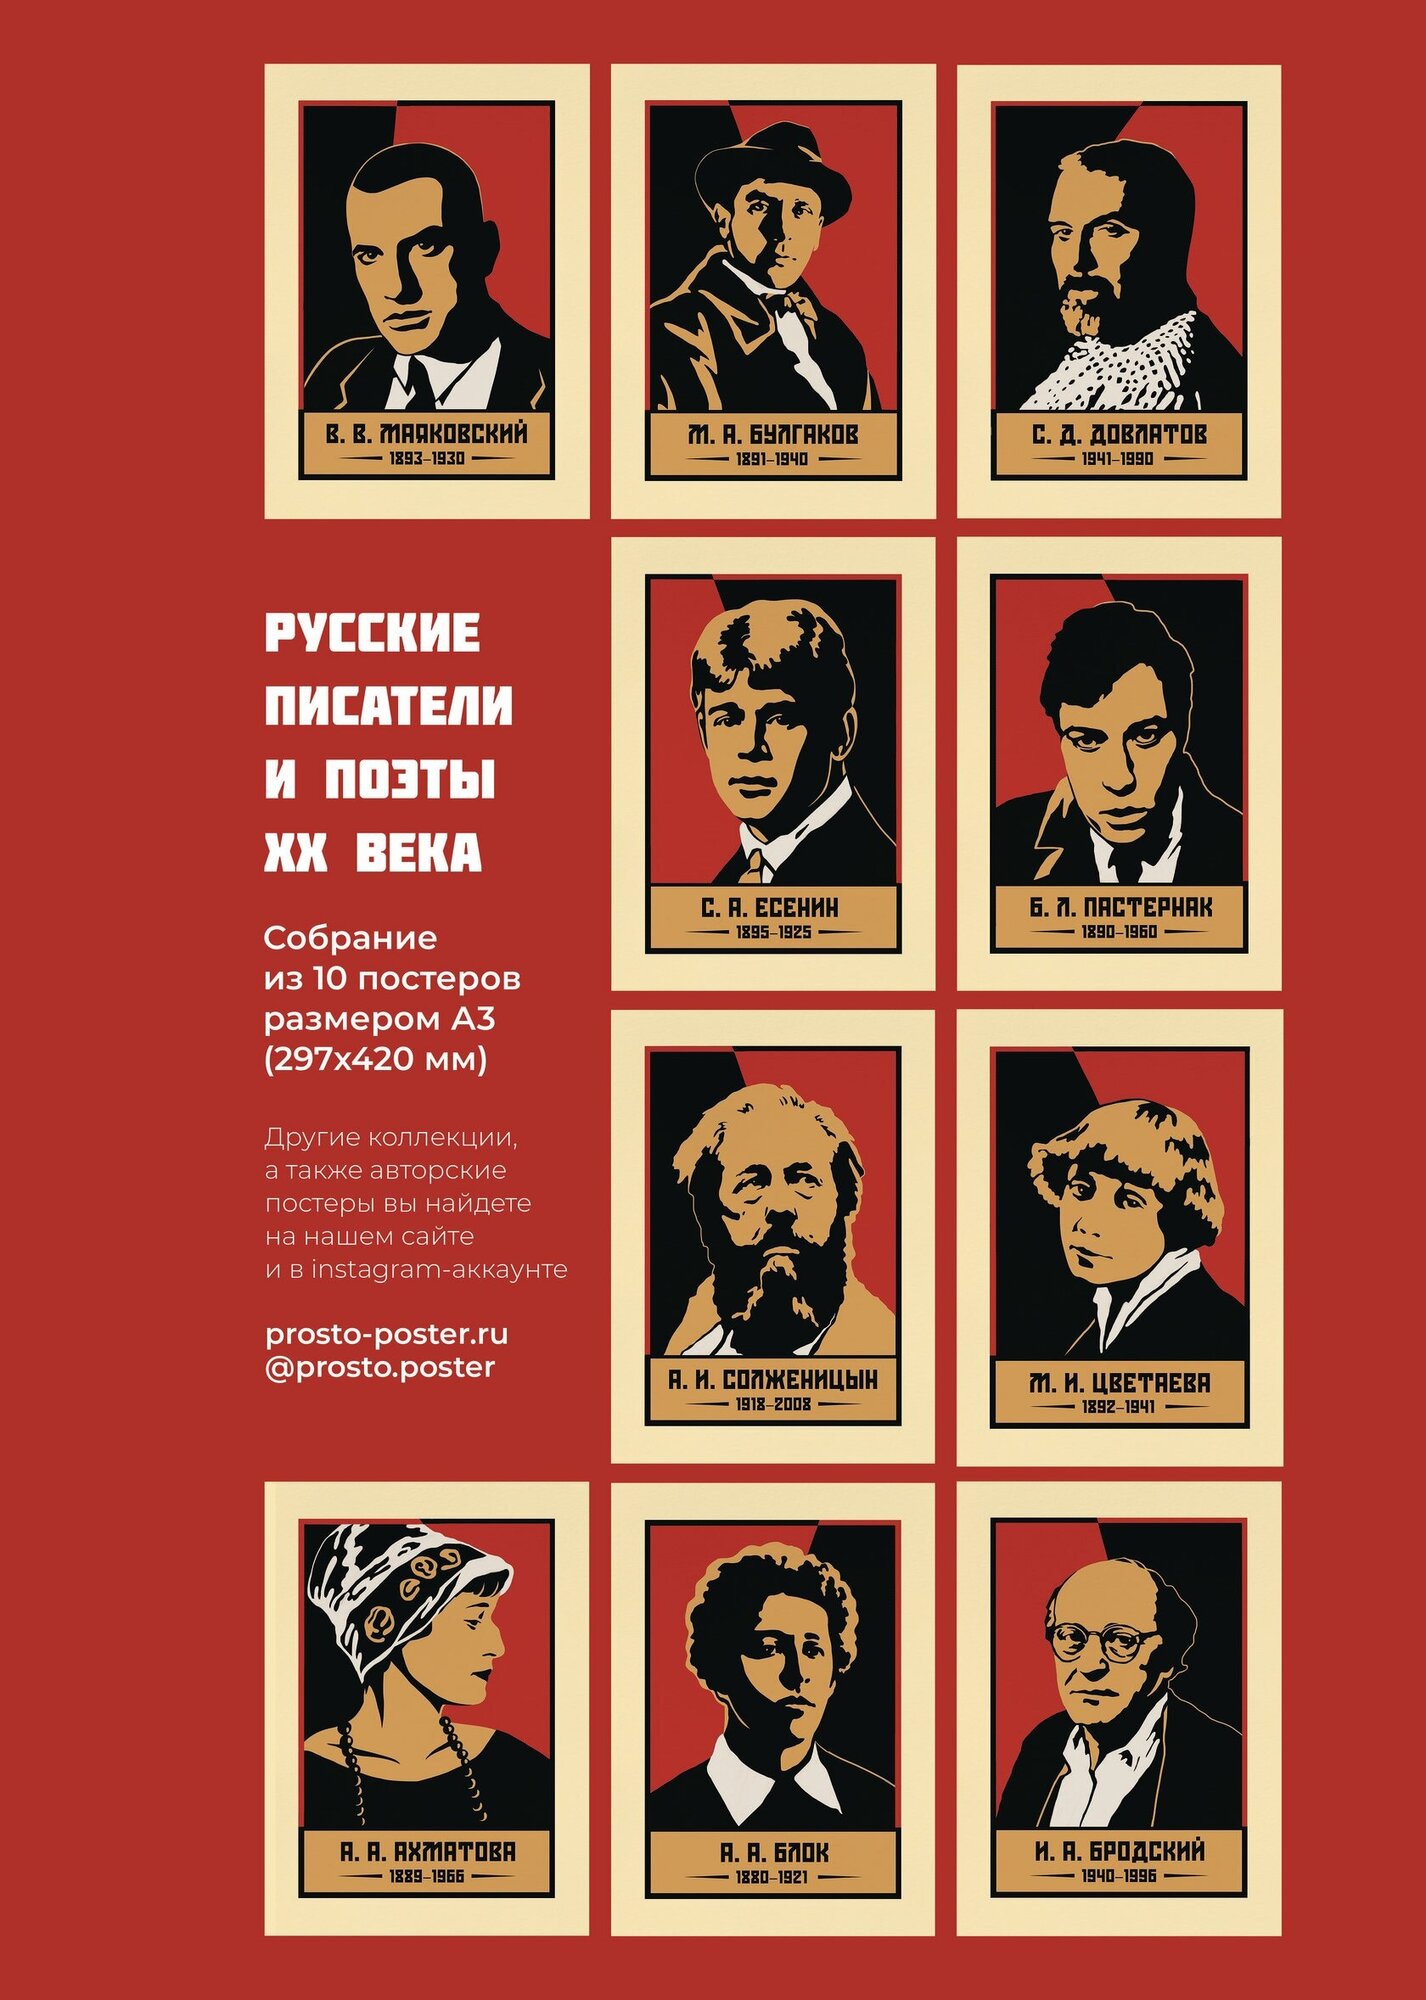 Русские писатели и поэты 20 века: набор из 10 постеров с портретами